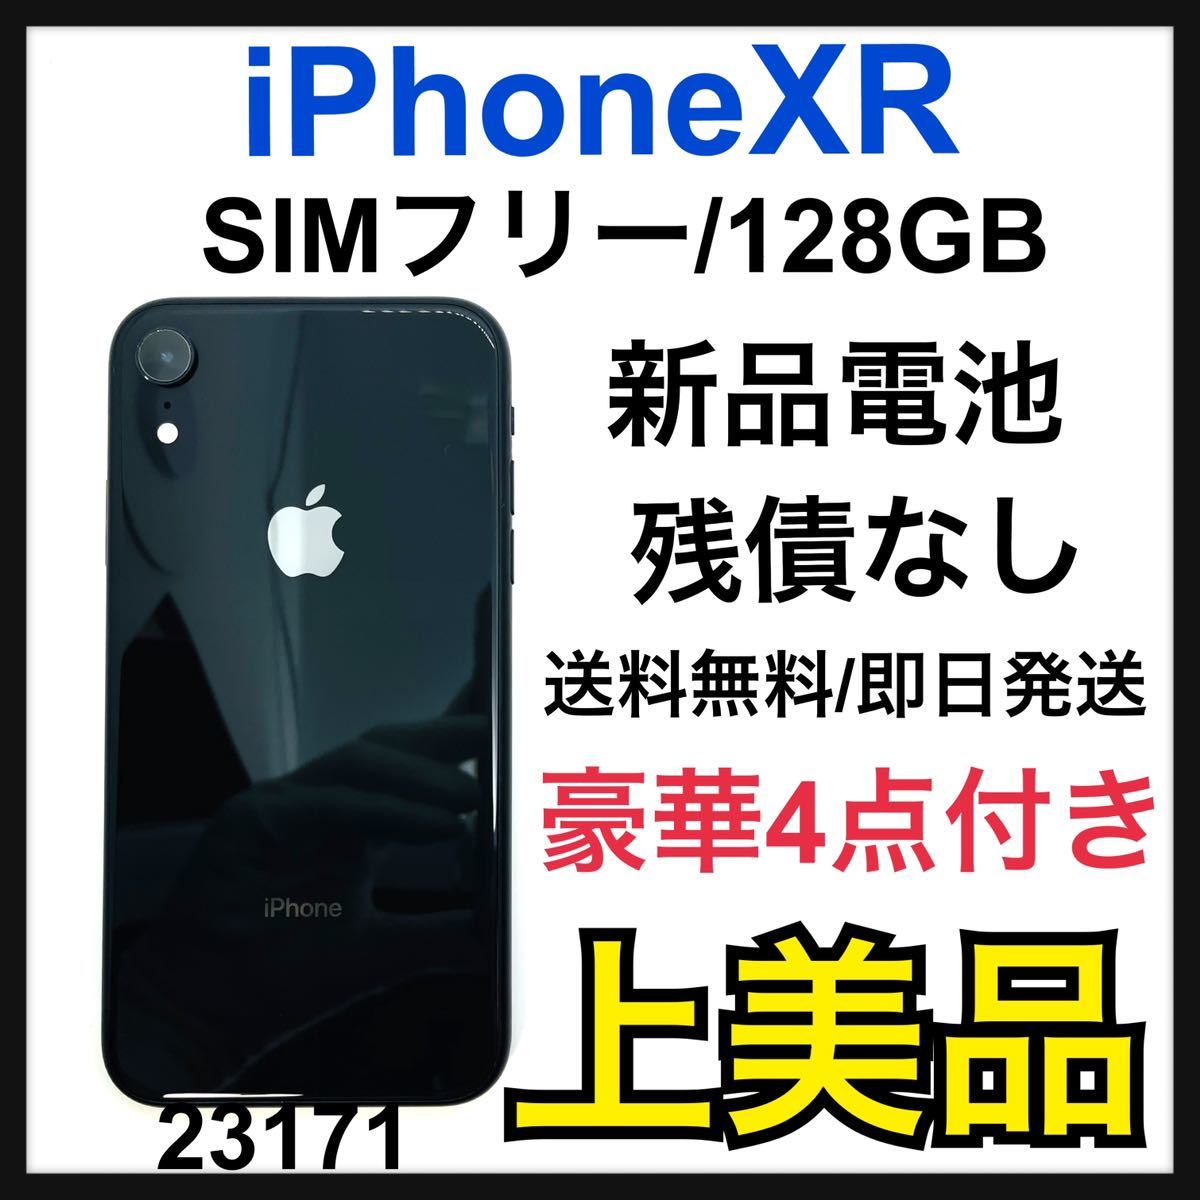 iPhone XR Black 128 GB SIMフリー equaljustice.wy.gov